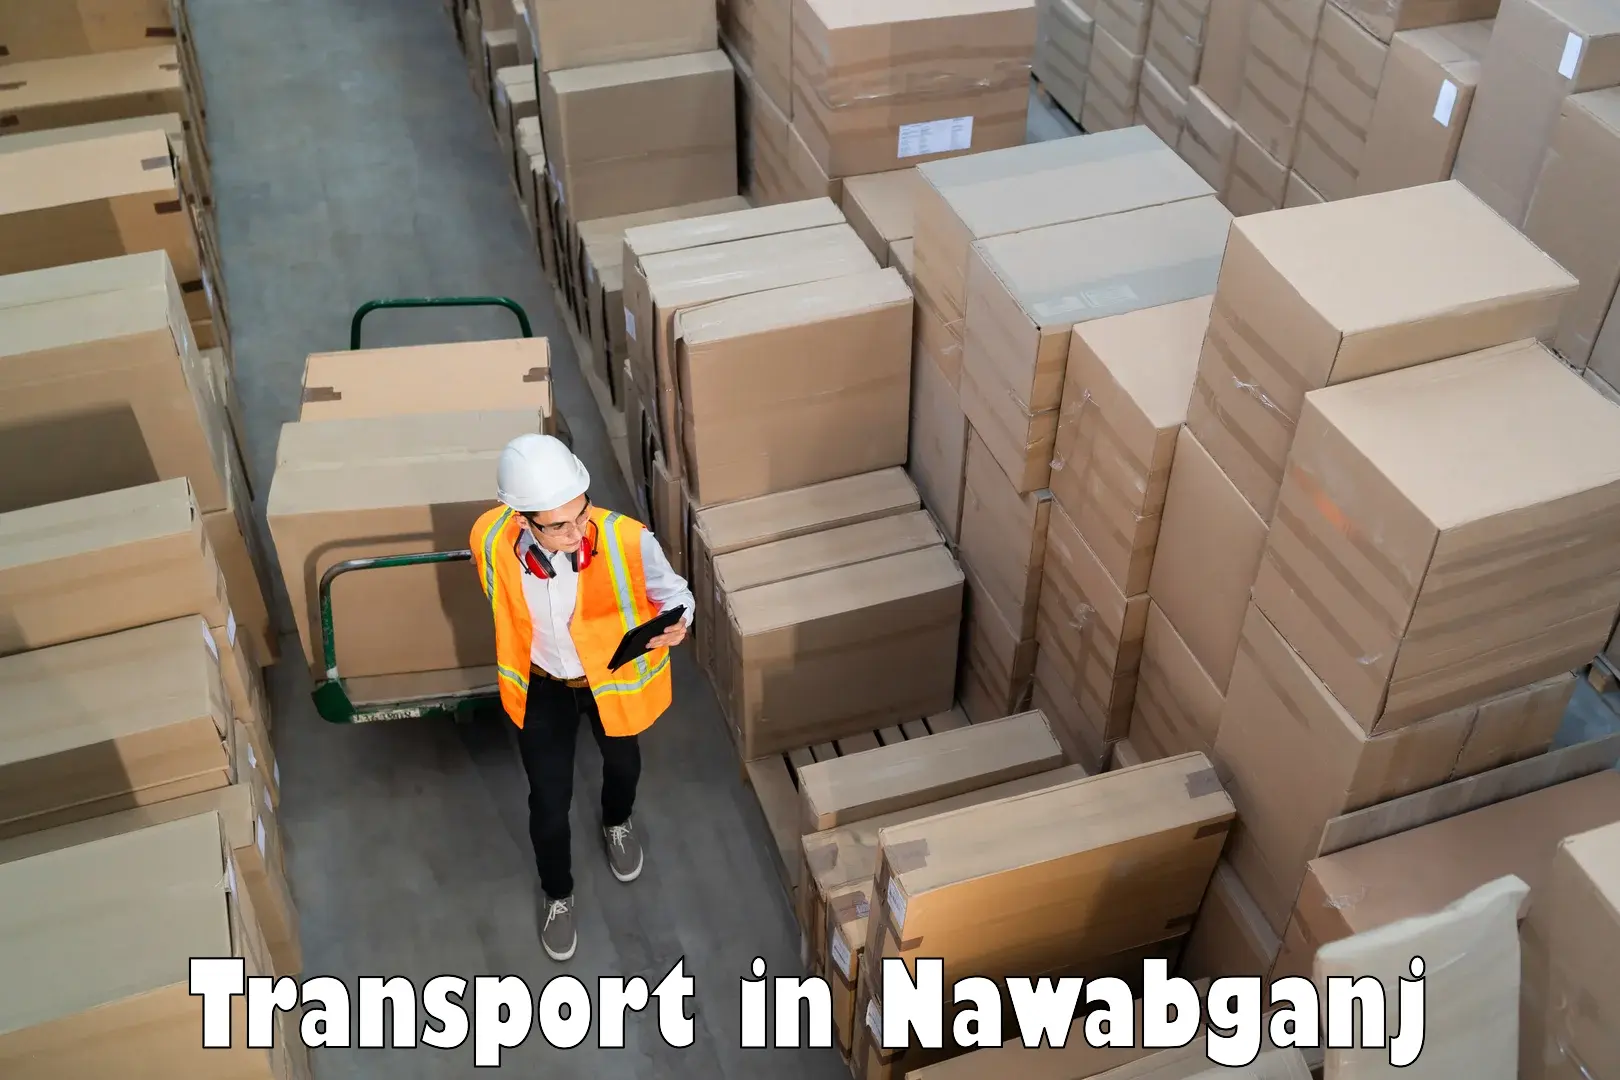 Daily parcel service transport in Nawabganj